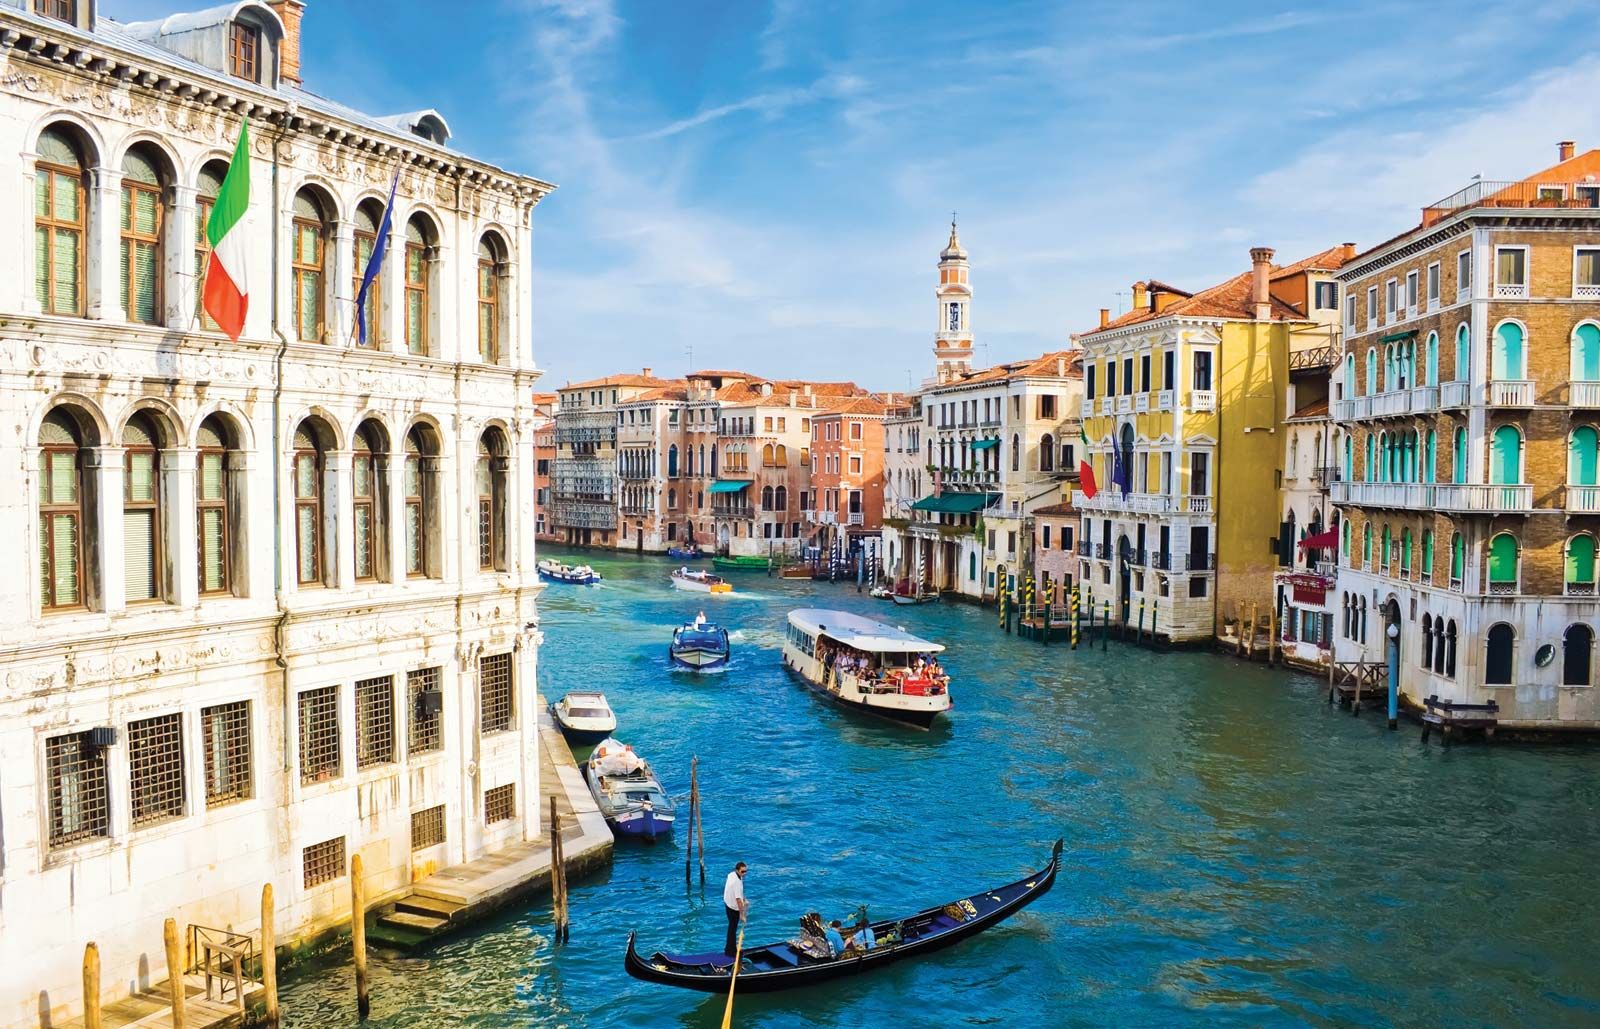 Thành phố kênh đào - Venice chính thức thu phí vào cửa - Ảnh 1.